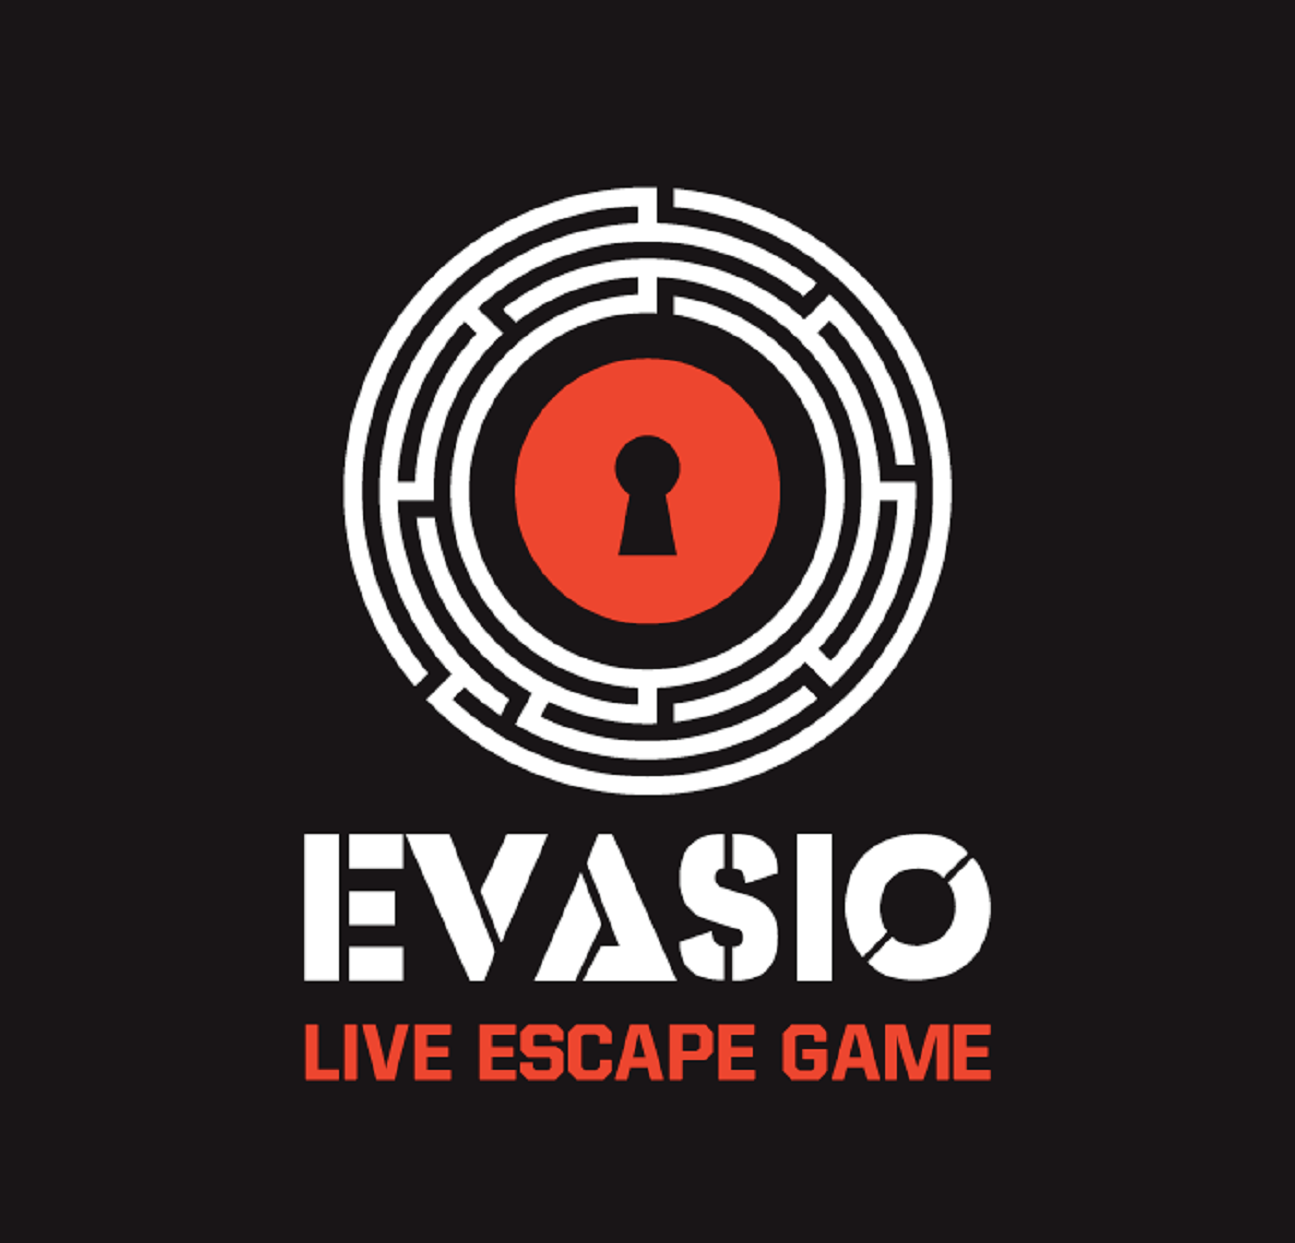 Evasio Live Escape Game